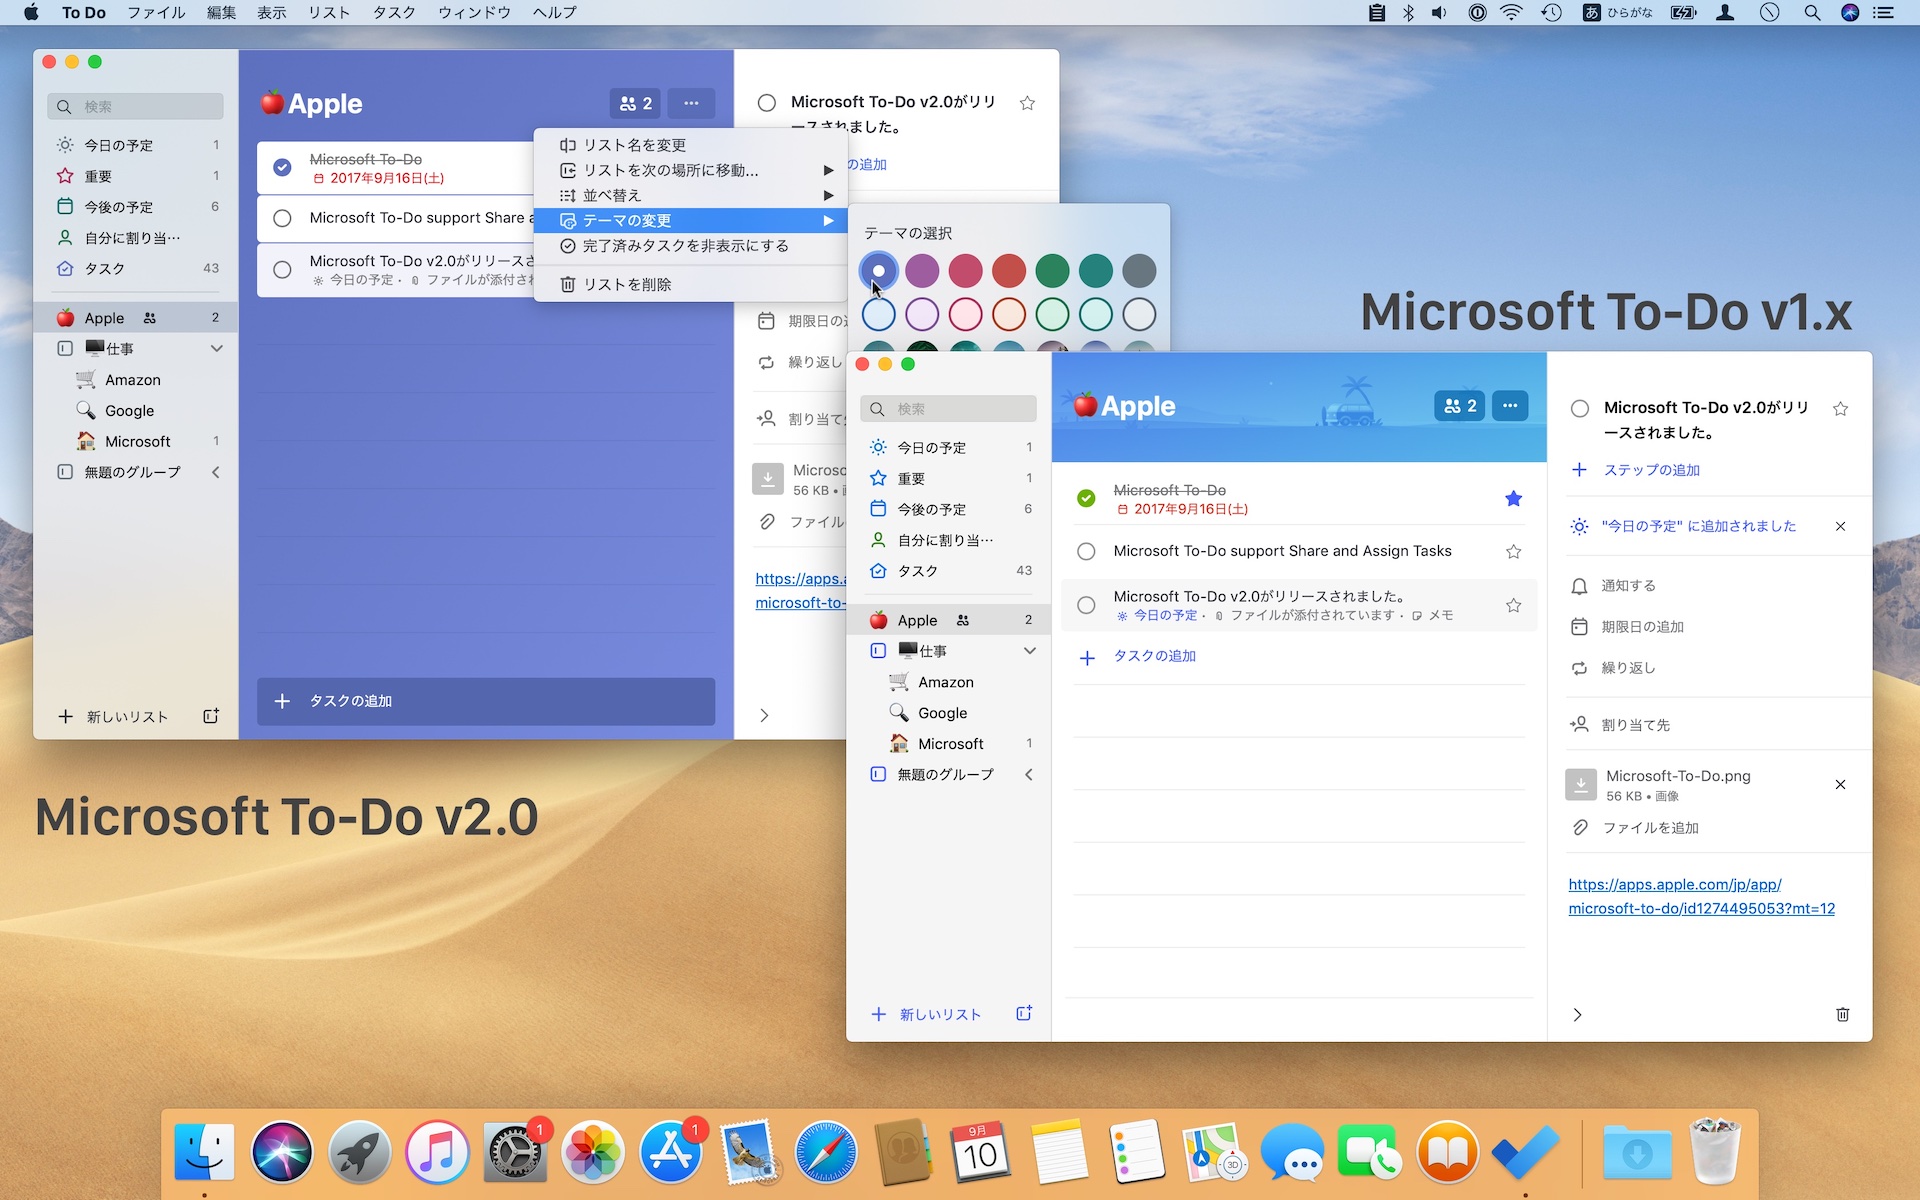 Microsoft To-Do v2.0 for Mac